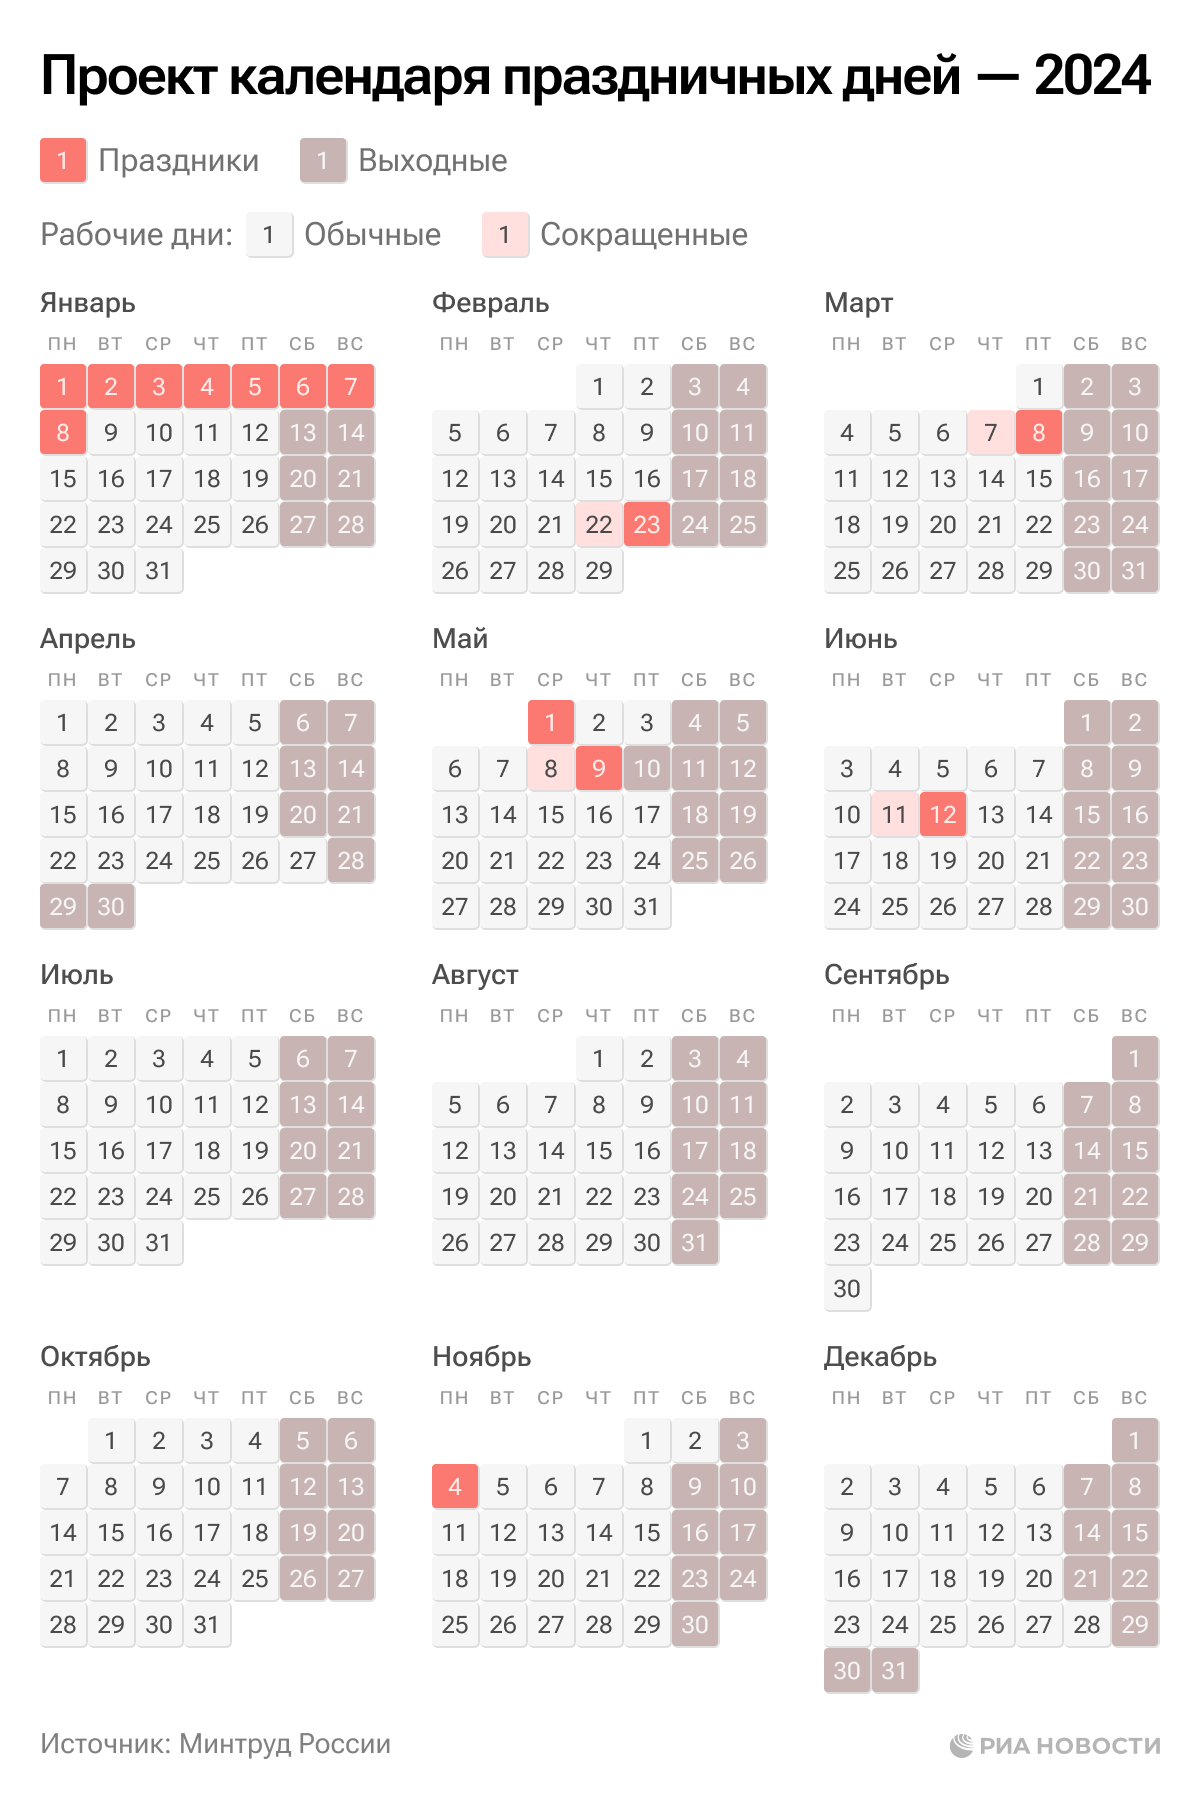 1 апреля 2024 какой день недели. Календарь праздников. Выходные и праздничные дни в 2024 году в России. Календарь рабочих дней. Календарь праздничных дней.